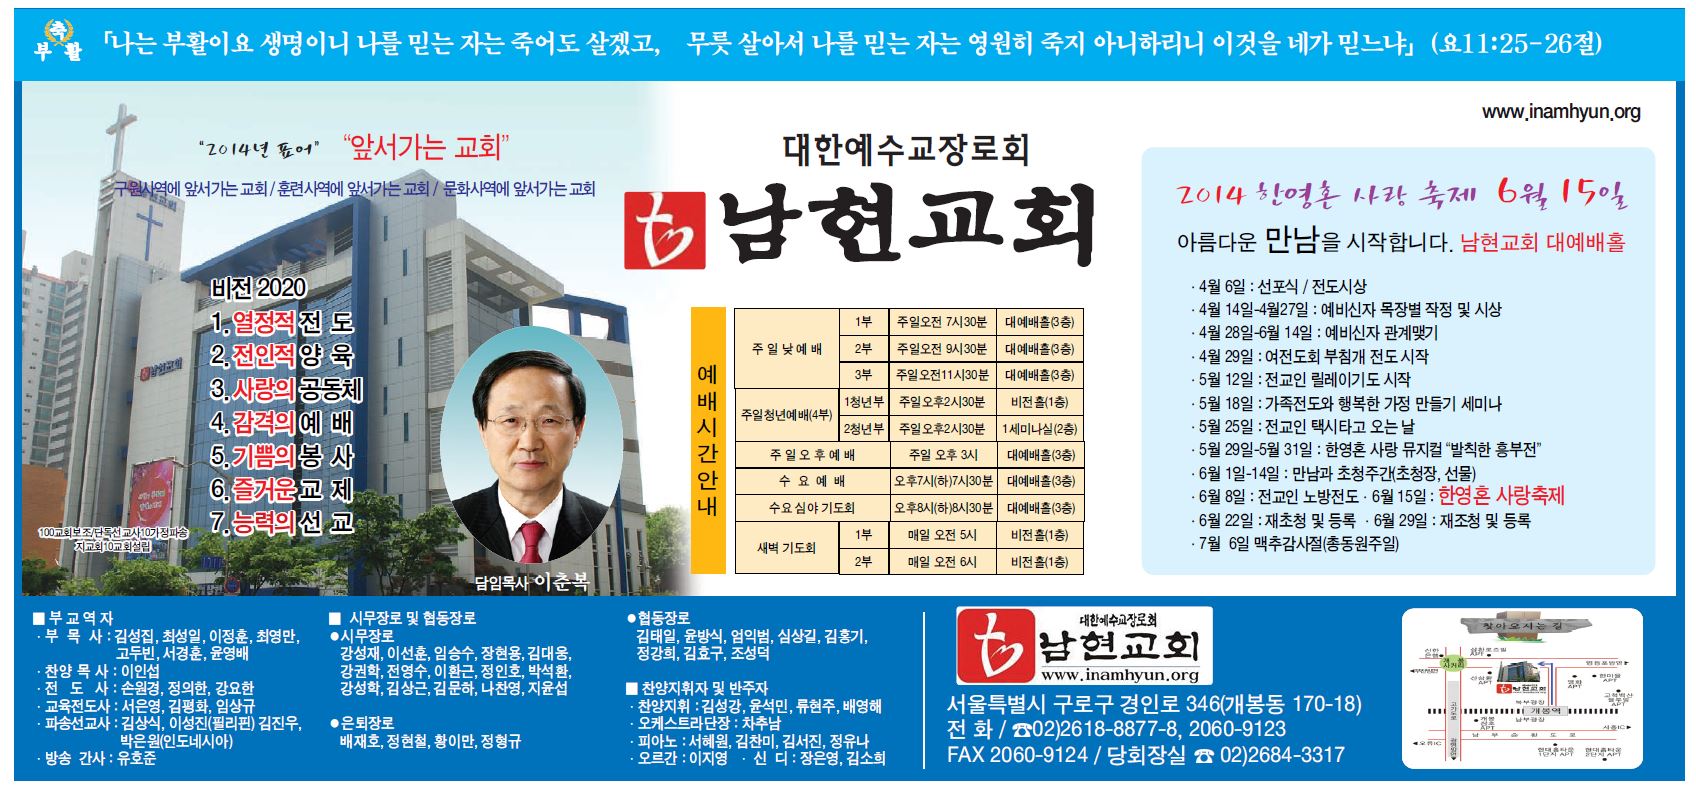 남현교회 4월 20일 부활절 광고.JPG